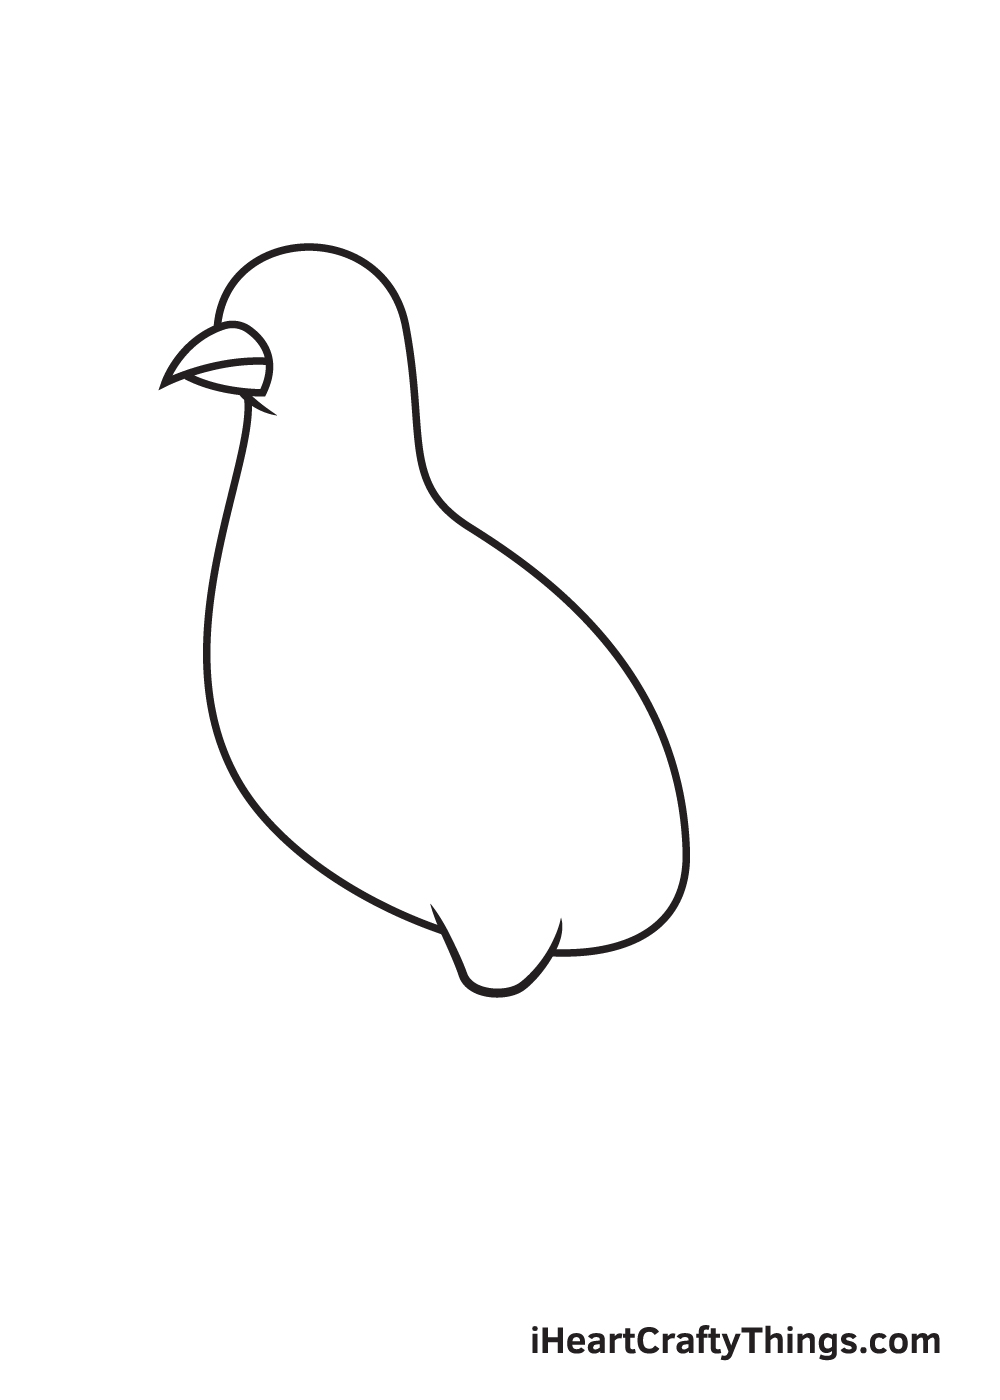 VẼ CON HEO - BƯỚC 4 - Hướng dẫn cách vẽ chim bồ câu đơn giản với 9 bước cơ bản